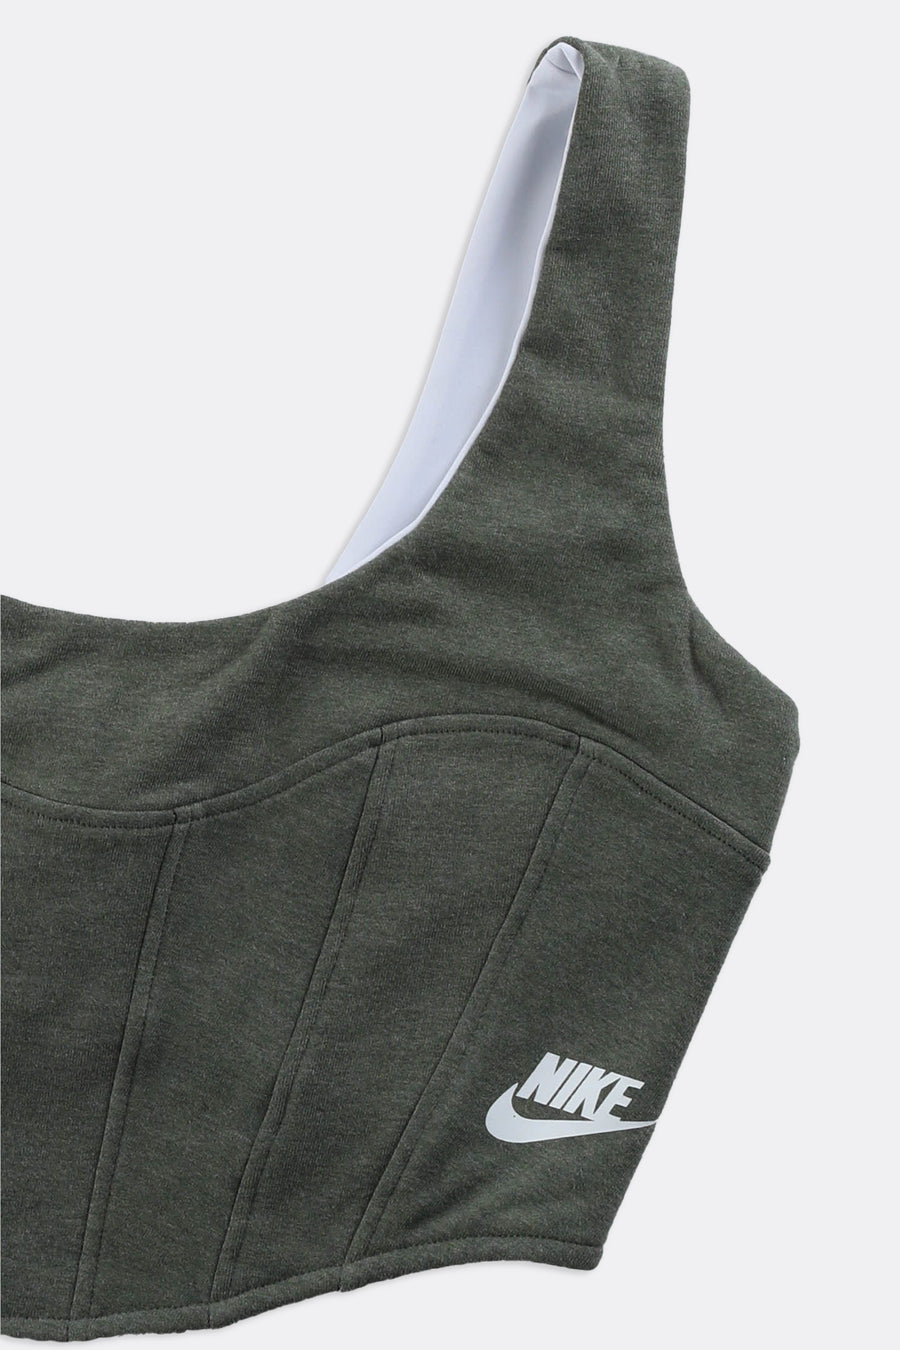 Rework Nike Sweatshirt Bustier - L